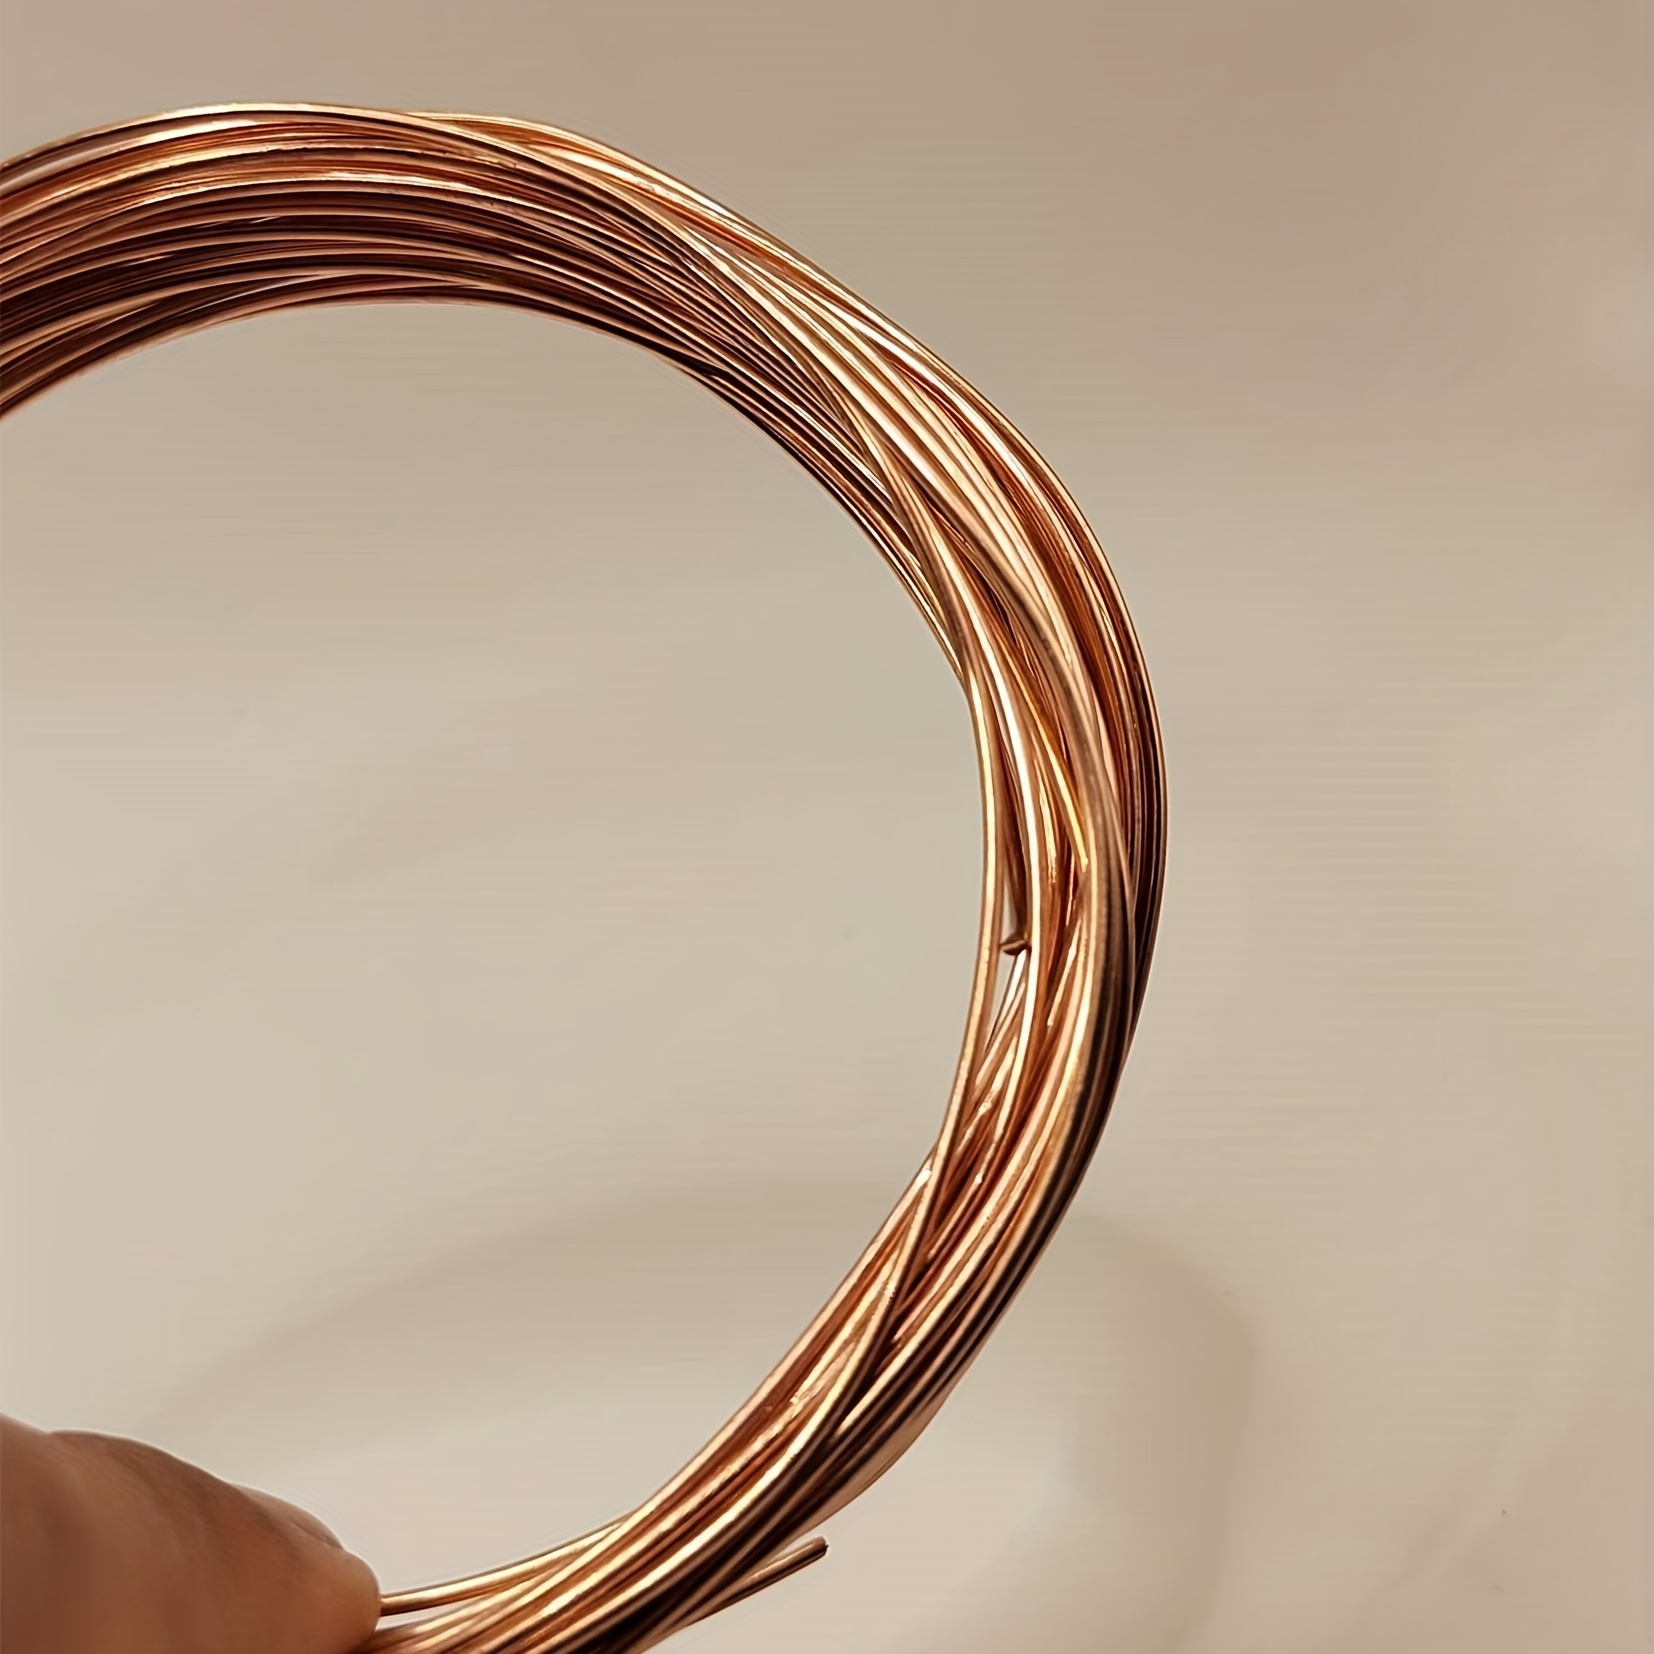 Soft 99% Copper Wire, 19 Gauge Copper Wire,* A Roll Of Bare Copper